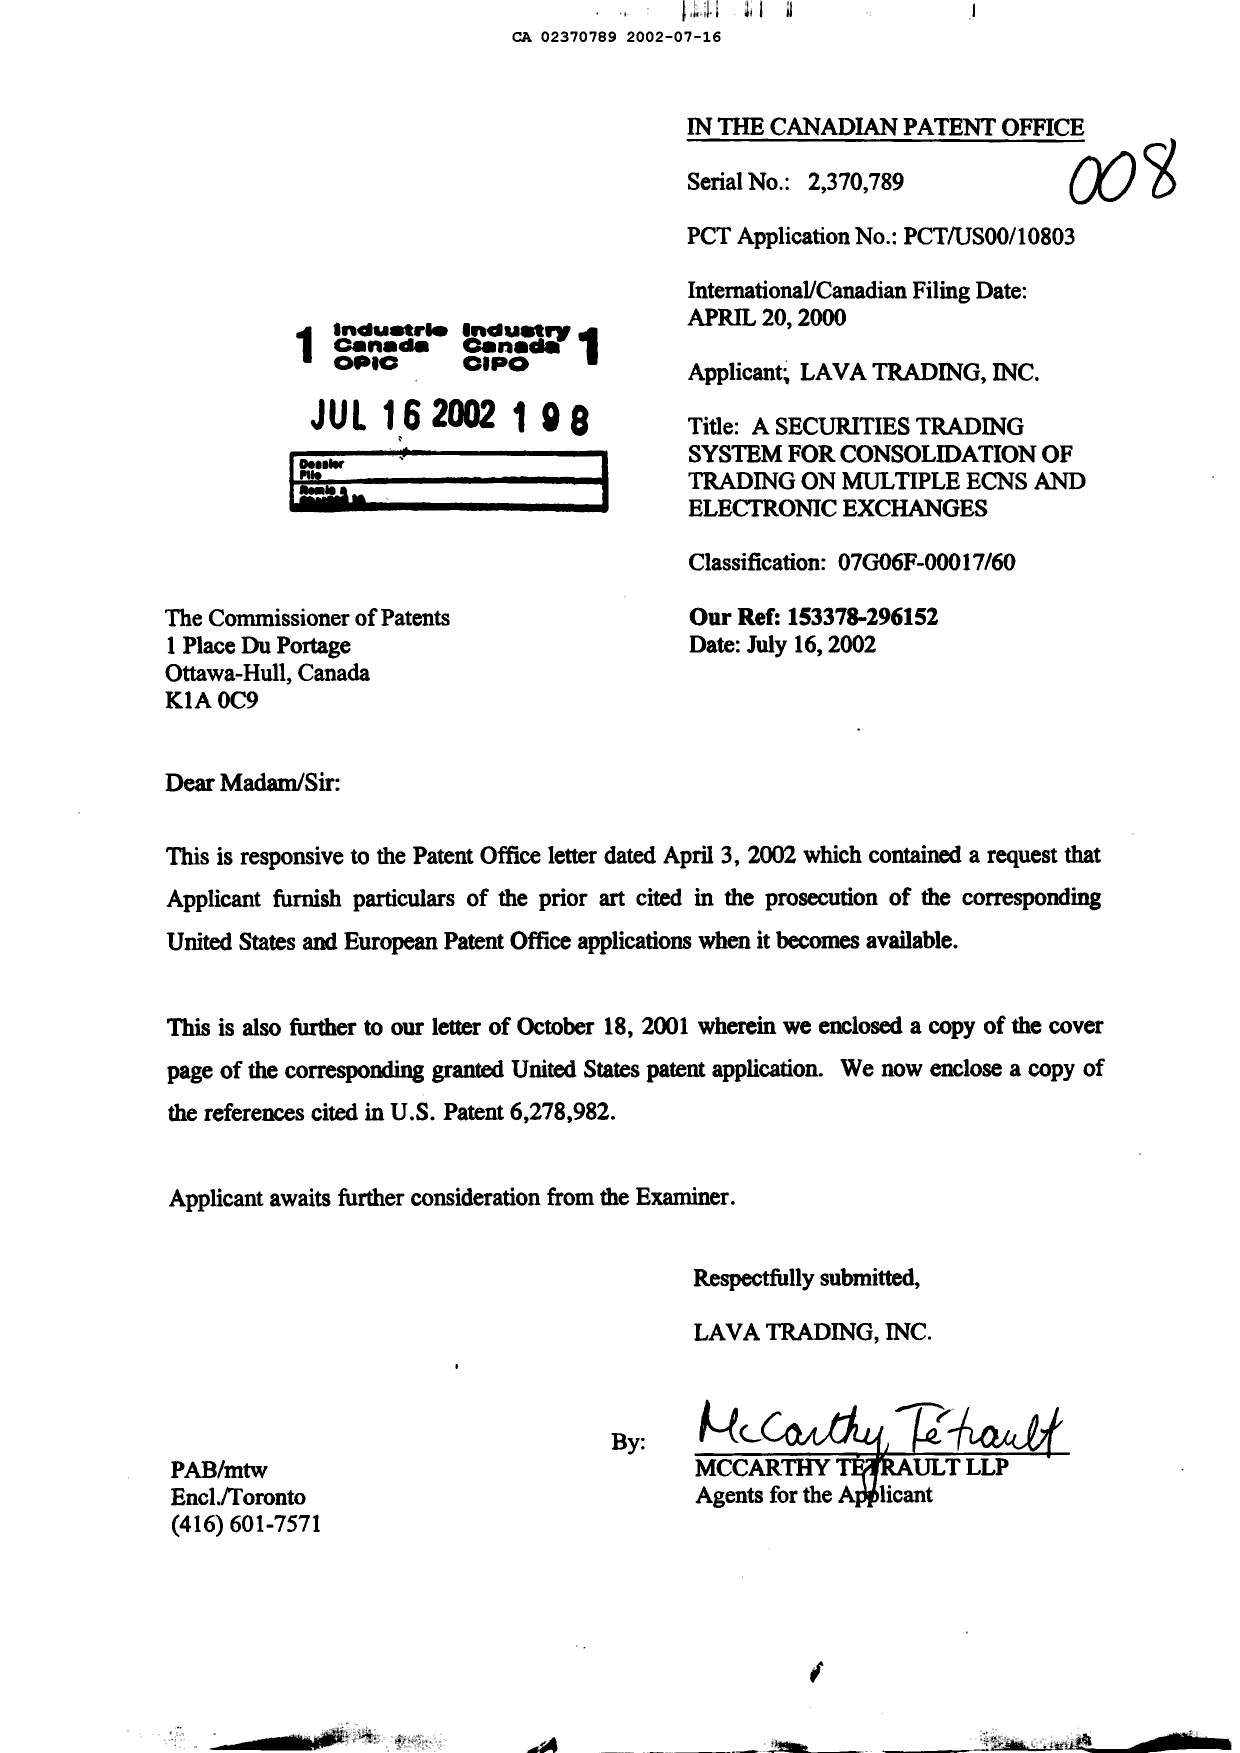 Document de brevet canadien 2370789. Poursuite-Amendment 20020716. Image 1 de 1